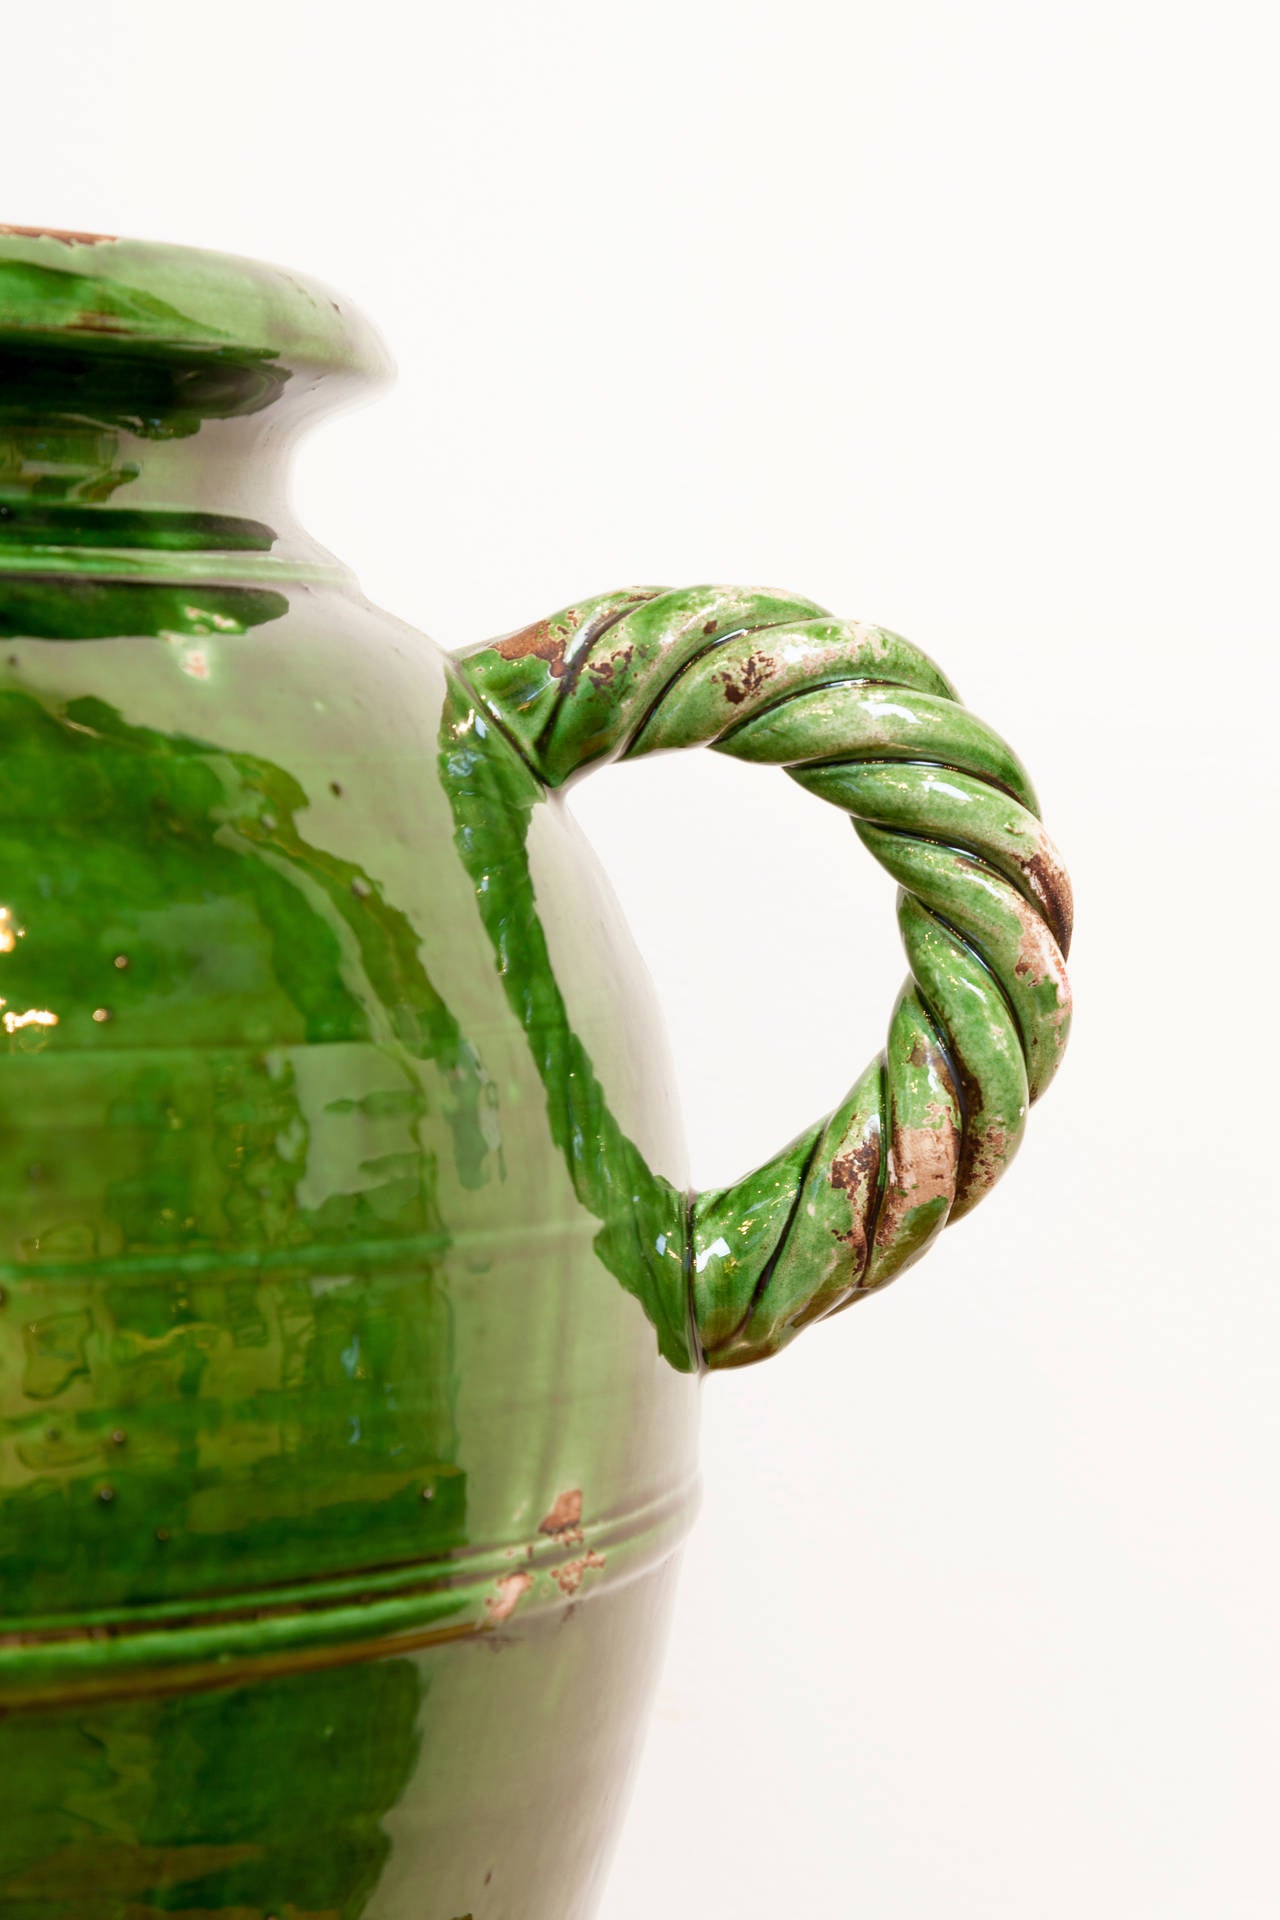 Glazed French Provençal Storage Jar, Late 19th Century